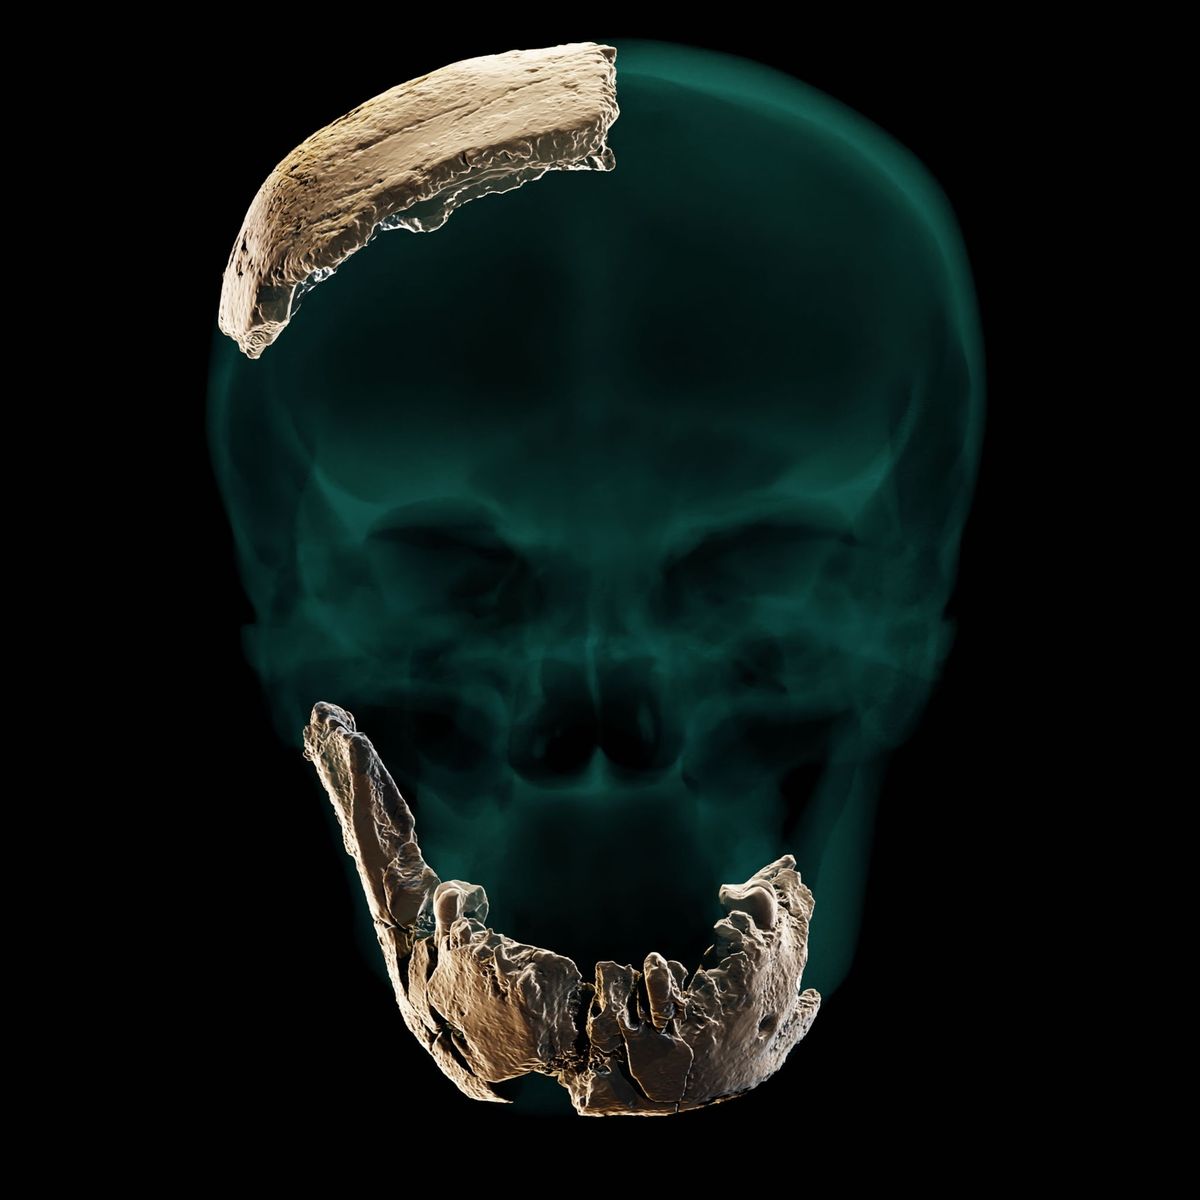 boezem roltrap Koloniaal Vondst van schedel wijst op onbekende voorouder van de mens